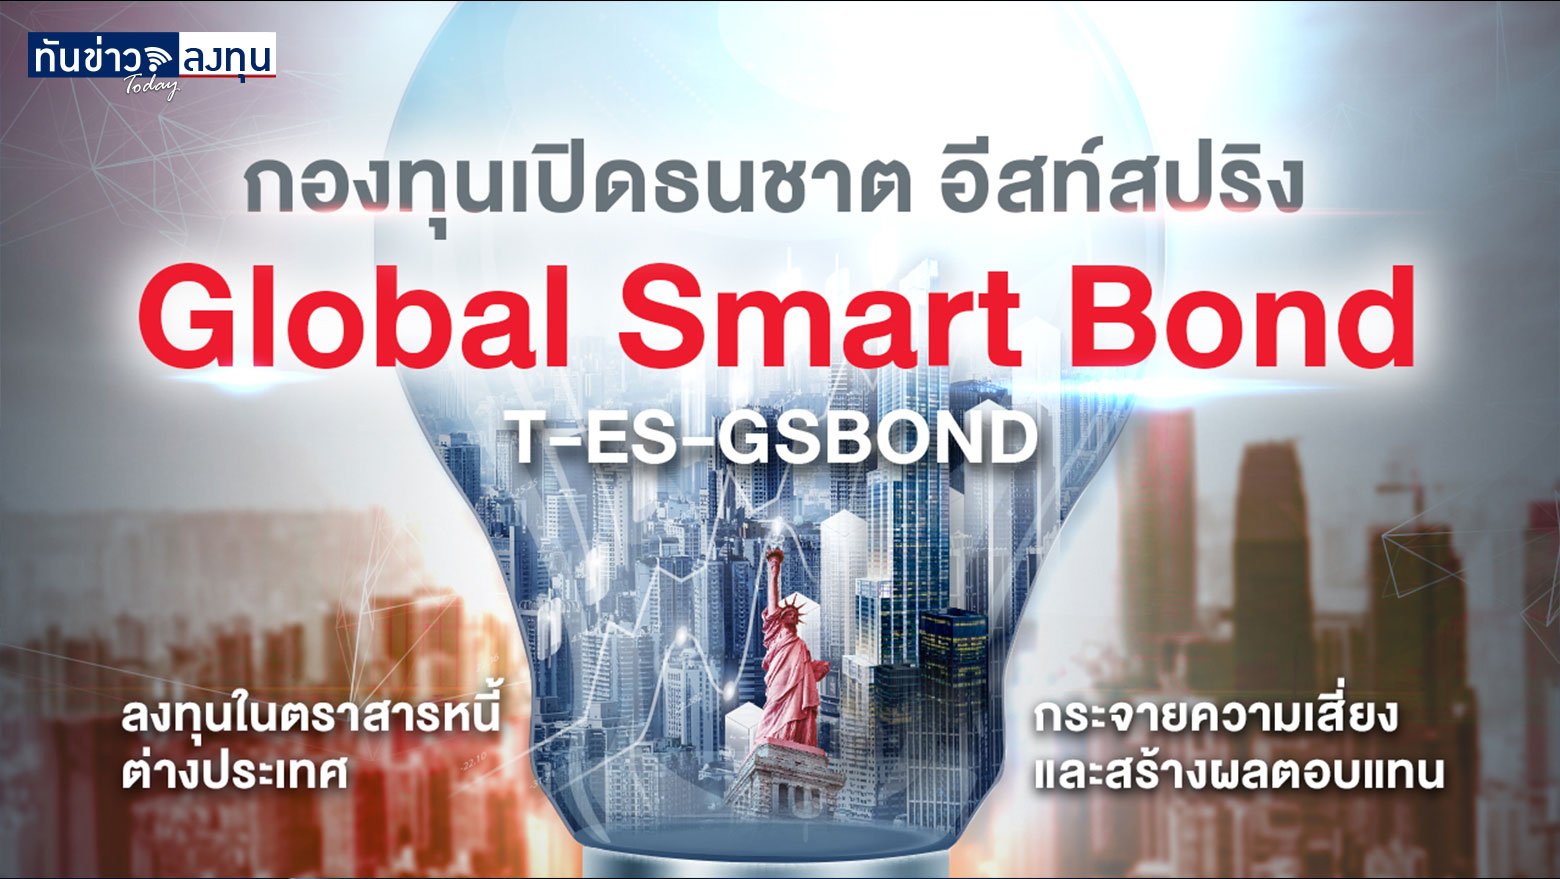 กองทุนเปิดทีเอ็มบี อีสท์สปริง Global Smart Bond (TMB-ES-GSBOND)